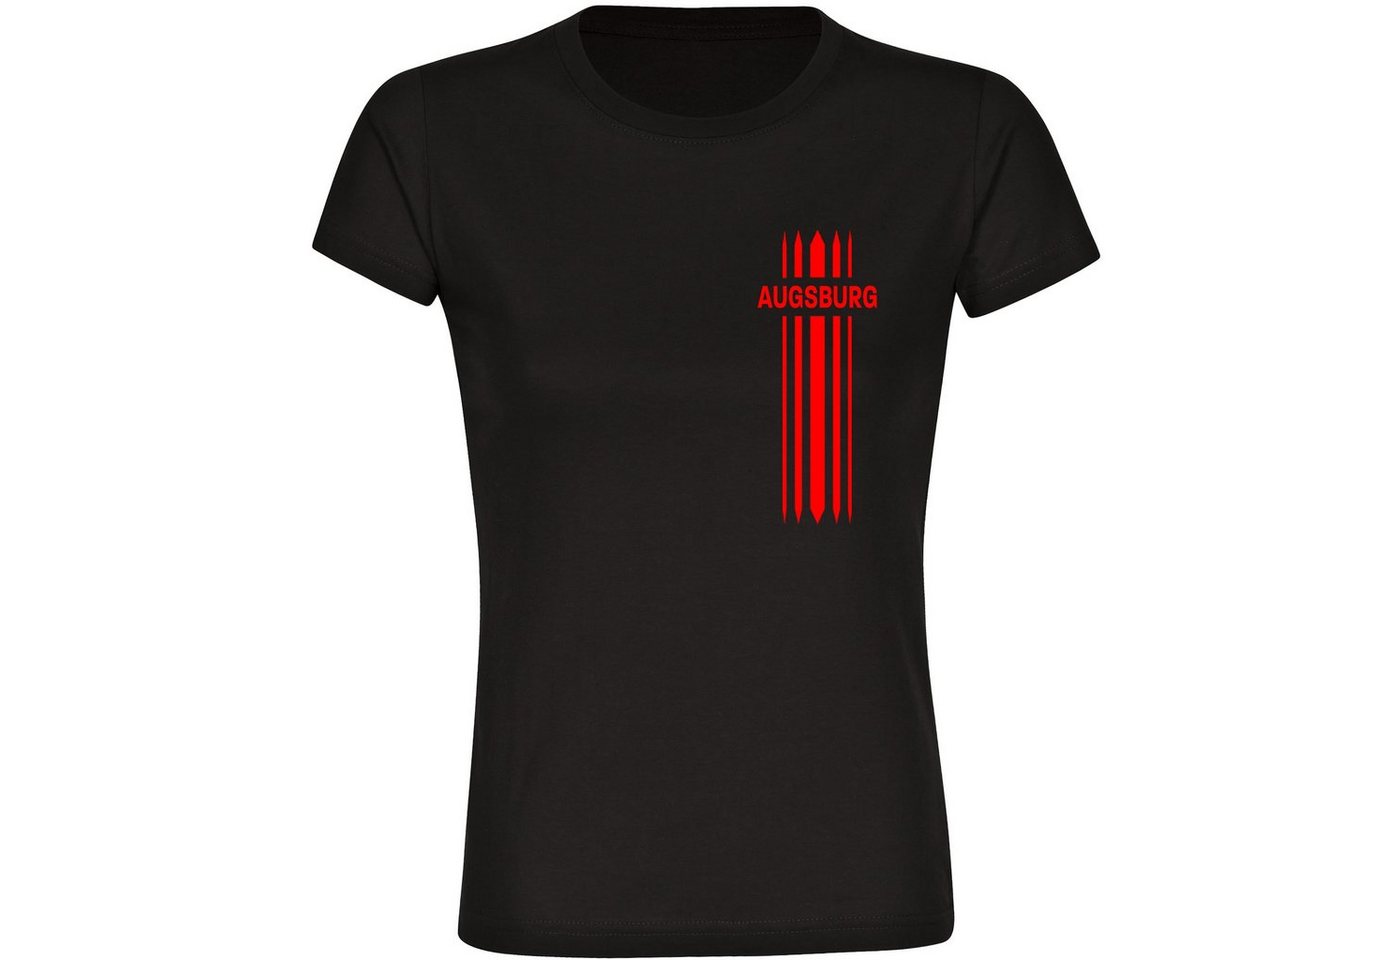 multifanshop T-Shirt Damen Augsburg - Streifen - Frauen von multifanshop